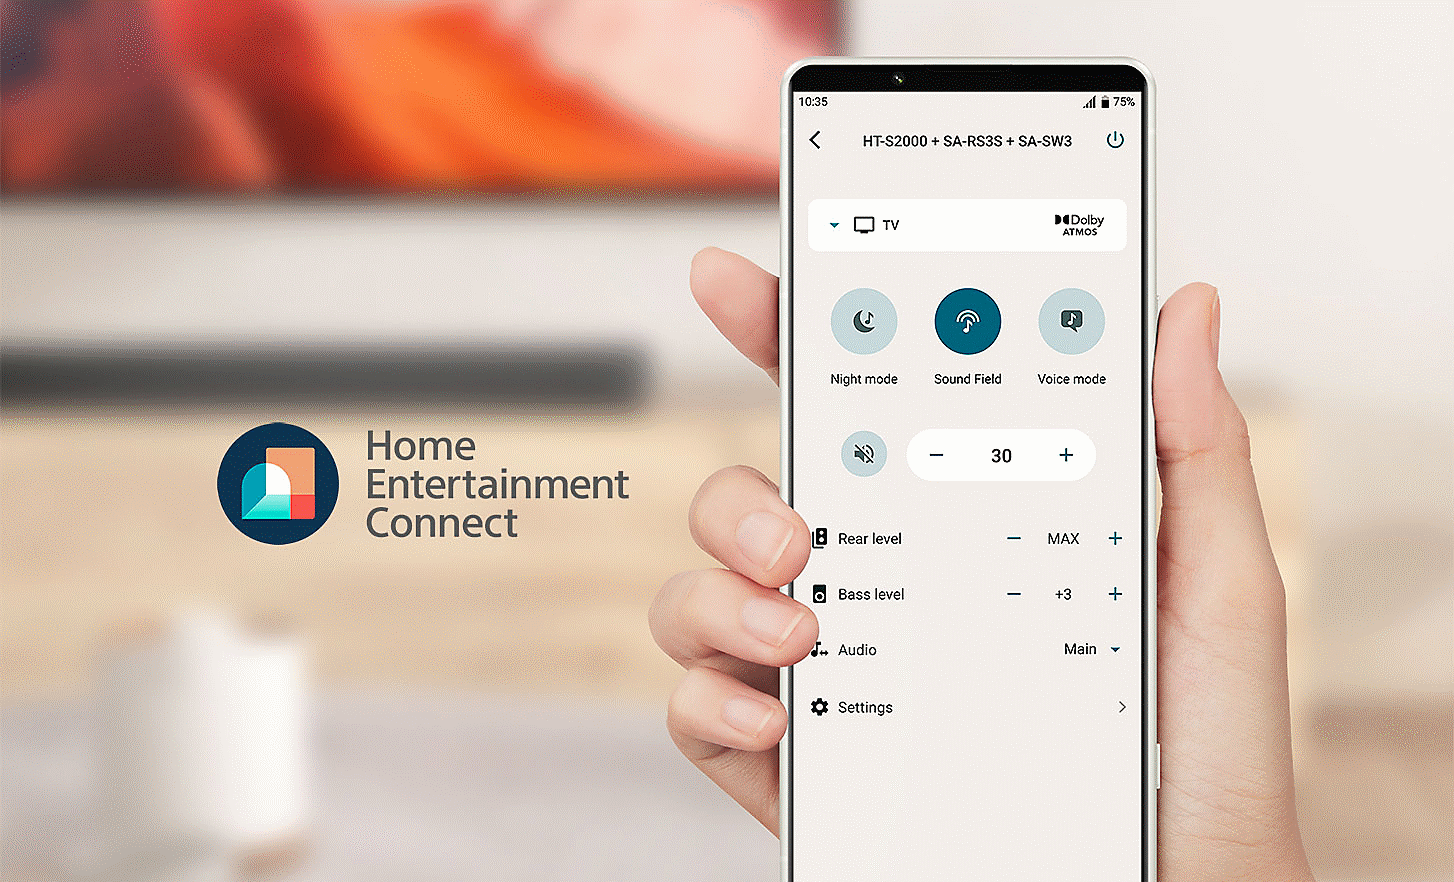 Image d'une main tenant un téléphone portable avec un menu des réglages à l'écran. Un logo Home Entertainment Connect se trouve à gauche.